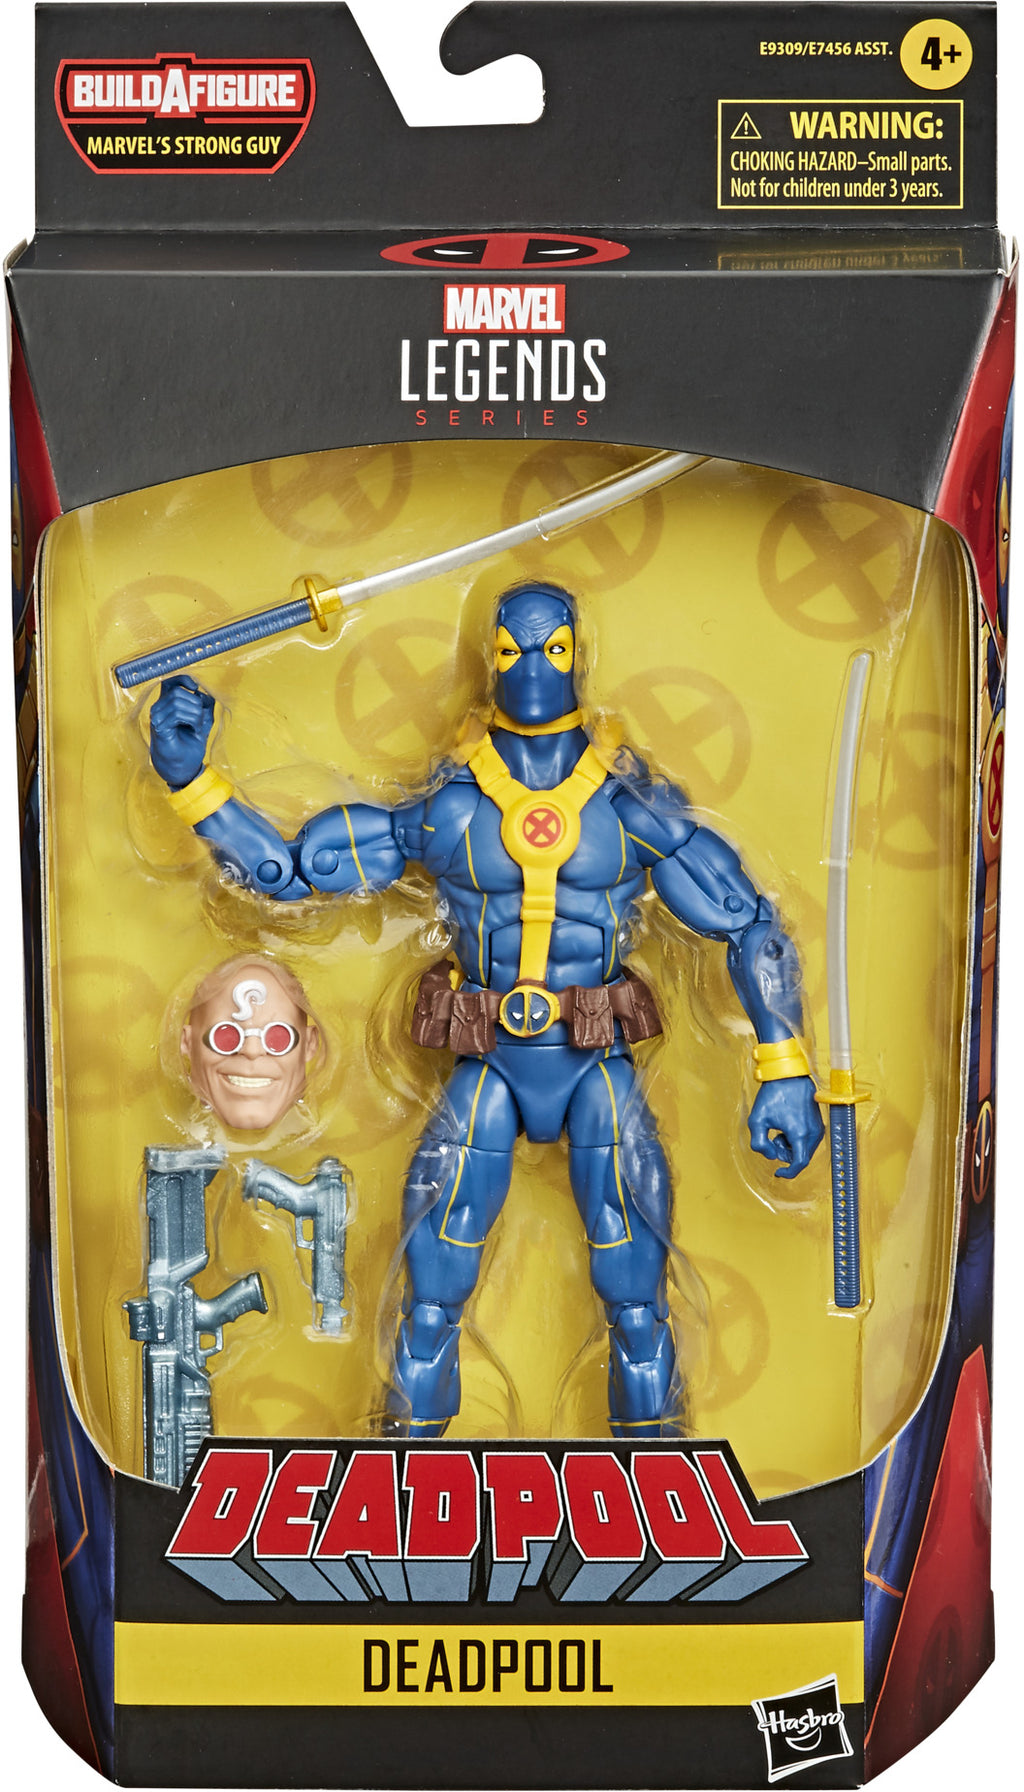 Marvel Legends Deadpool 6 Inch Action Figure BAF Strong Guy Series - Deadpool Blue & Gold